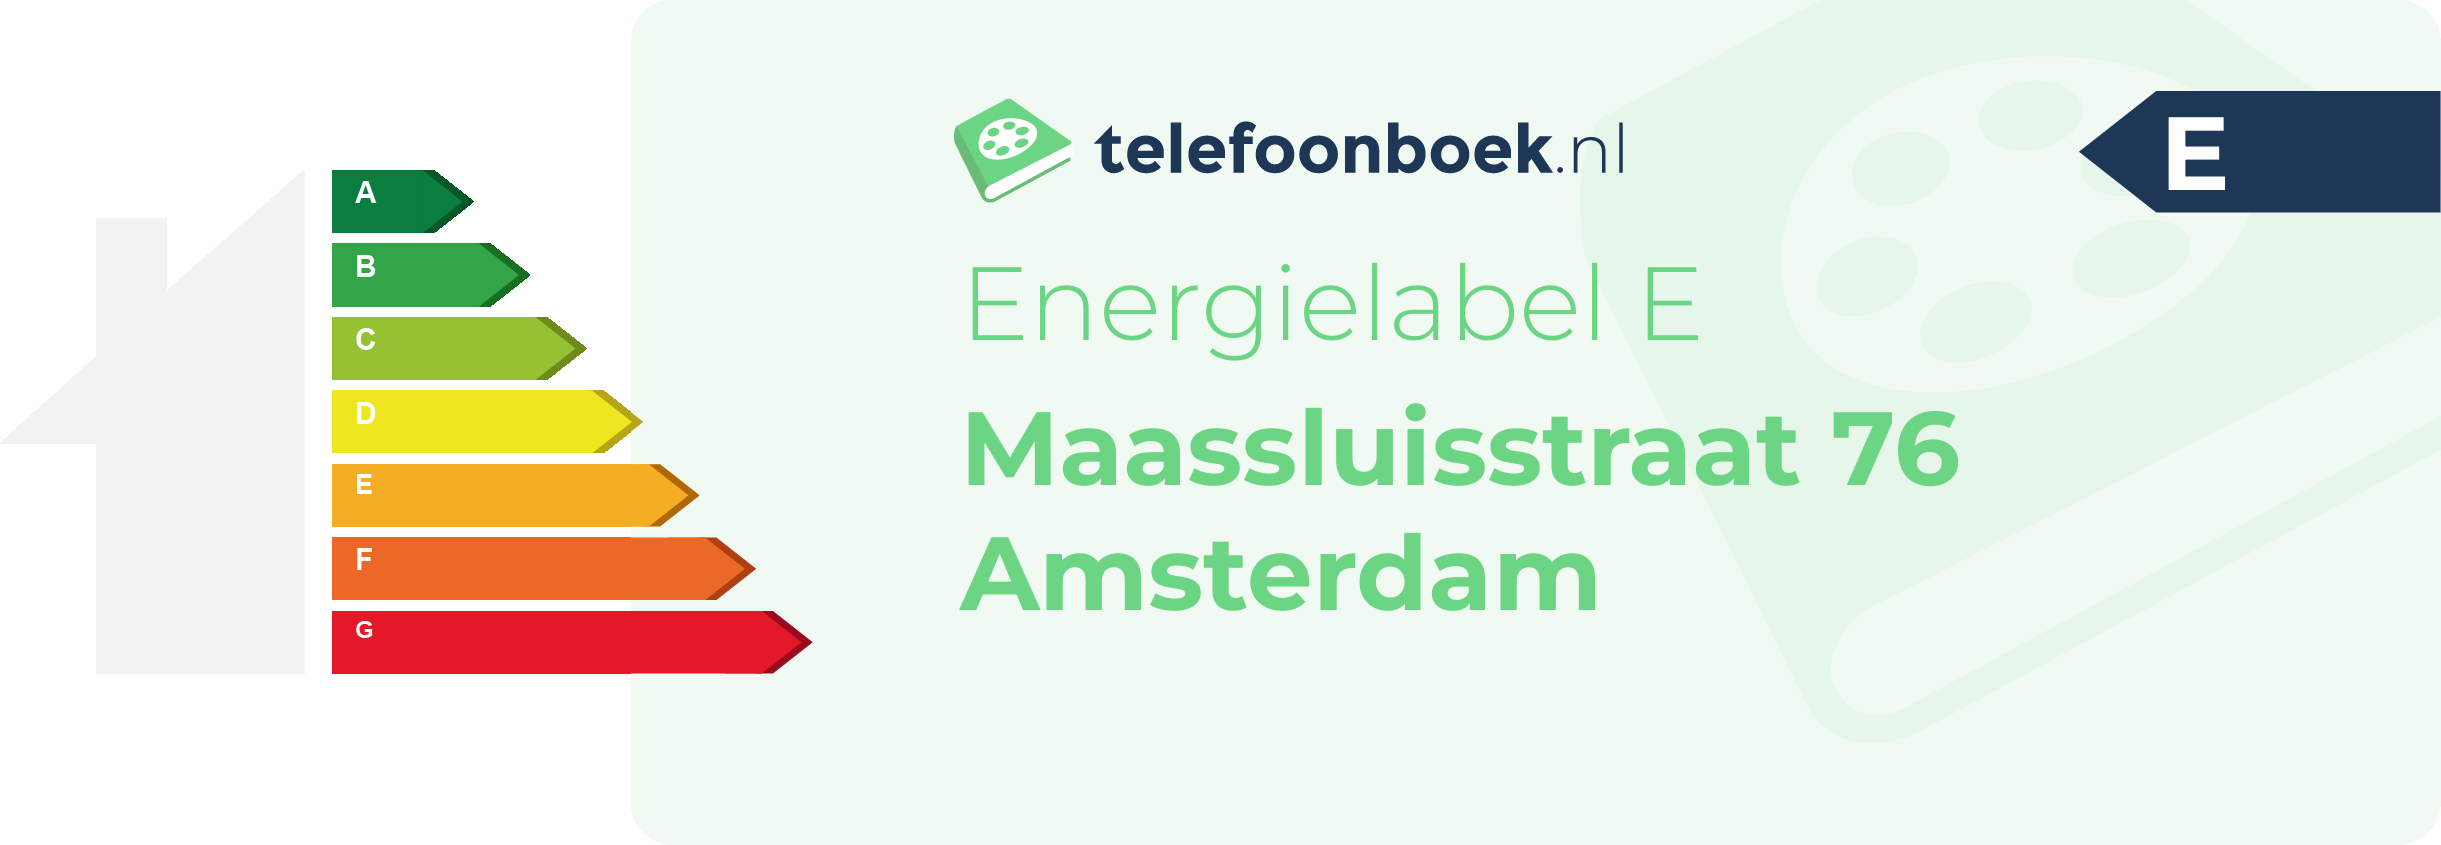 Energielabel Maassluisstraat 76 Amsterdam